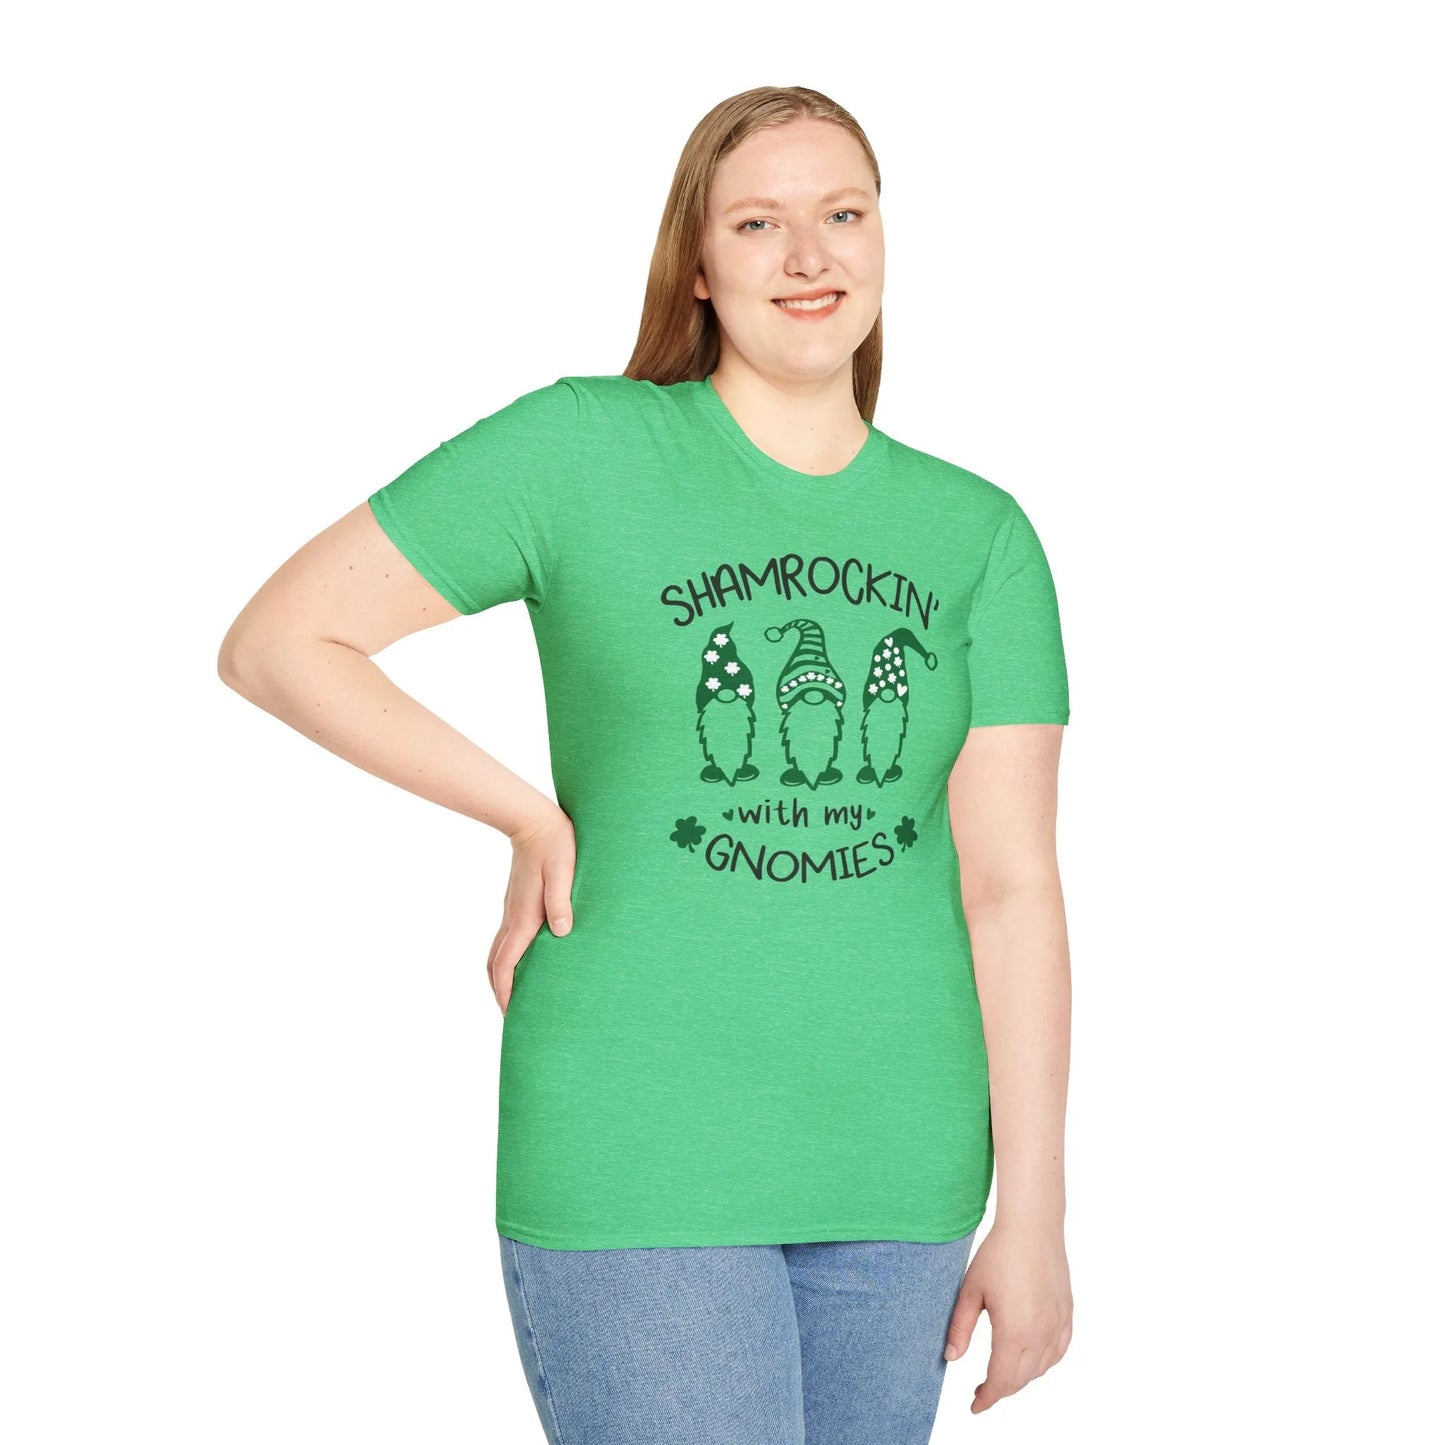 Shamrockin With My Gnomies St. Patrick's Day T-Shirt - Shamrockin With My Gnomies Shirt Green Model